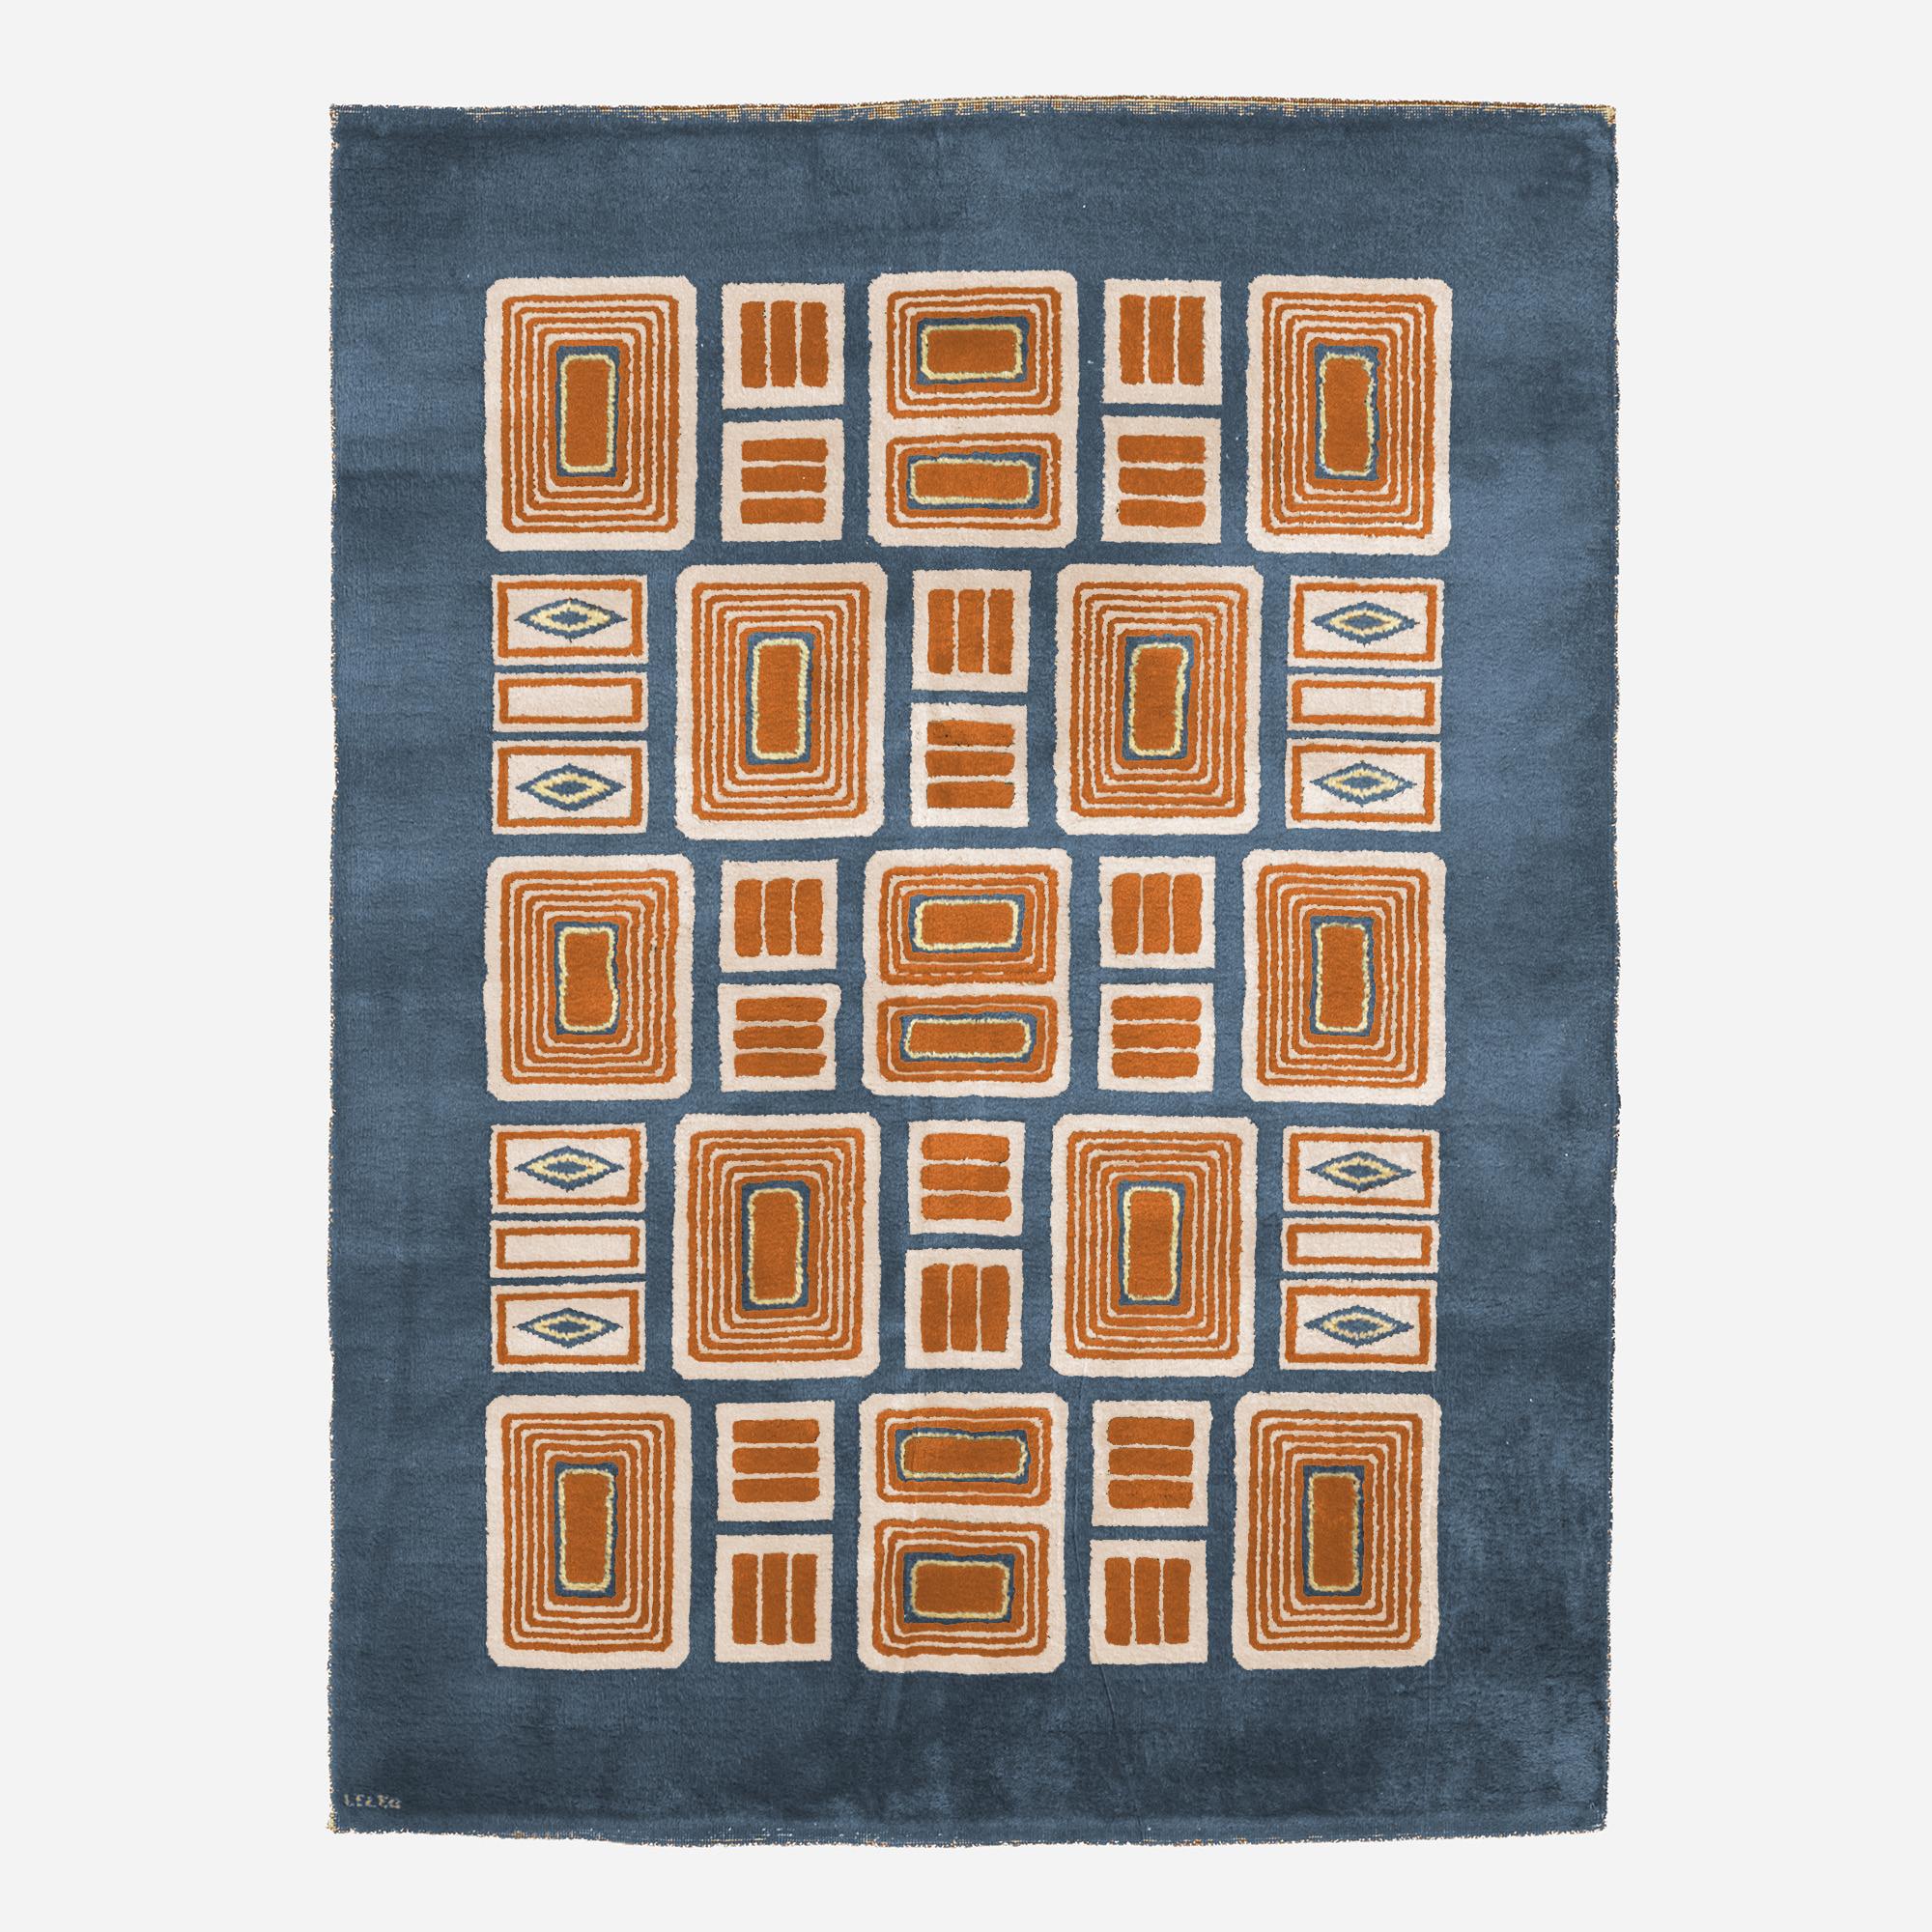 Tapis connu sous le numéro 833 des archives LELEU. Un exemplaire seulement réalisé dans les années 60. Ce tapis dessiné par Paule LELEU dans les années 60 a été réinterprété ici dans des couleurs bleues et orange pour le showroom LELEU. 
Son état